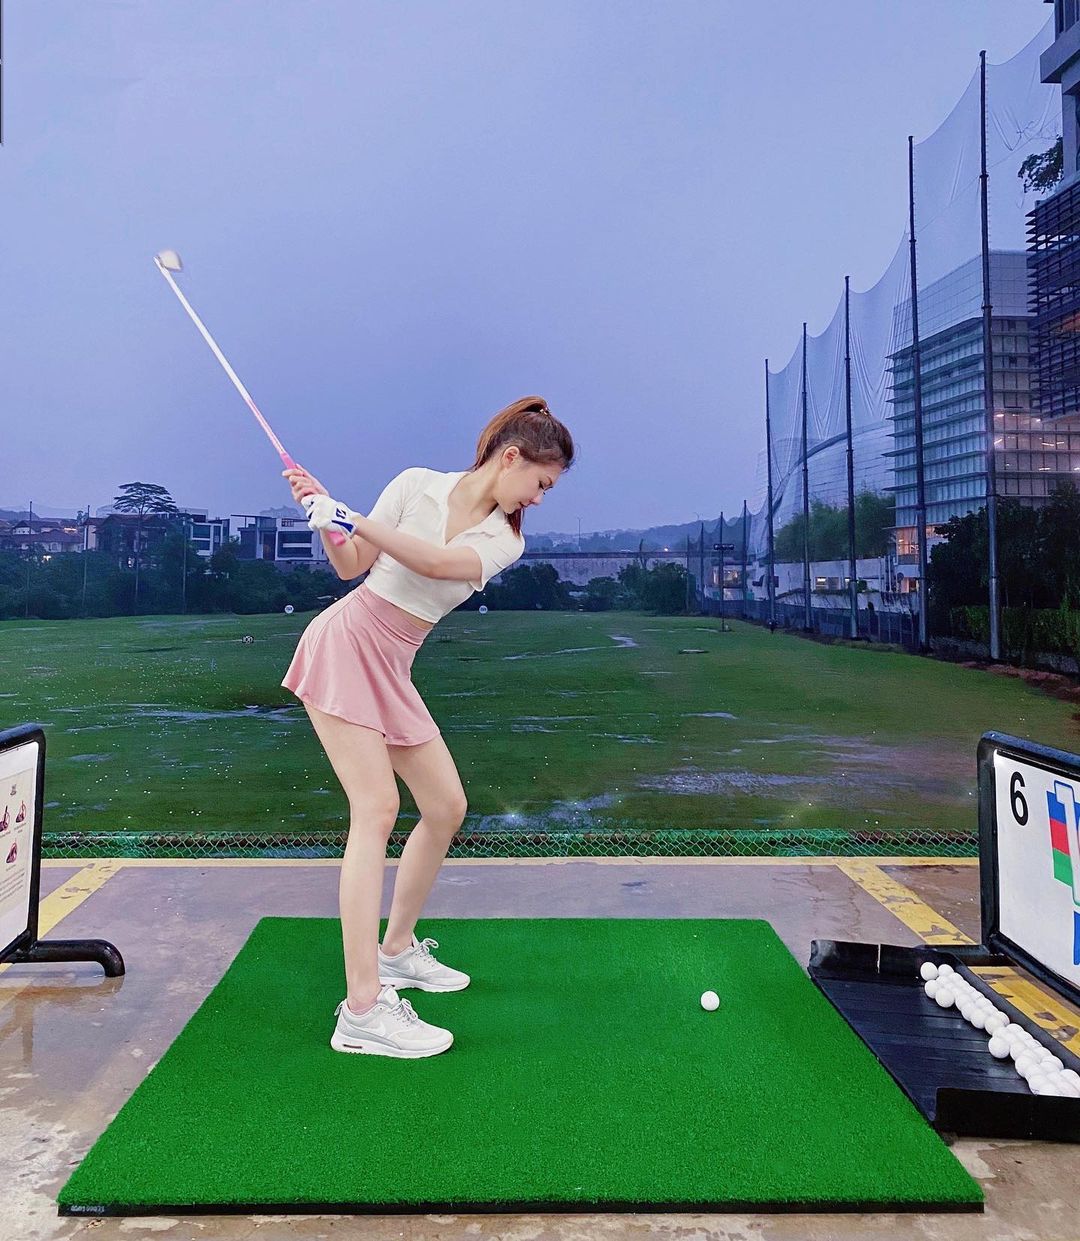 Hình ảnh về một cô gái chơi golf được lan truyền trên mạng xã hội.